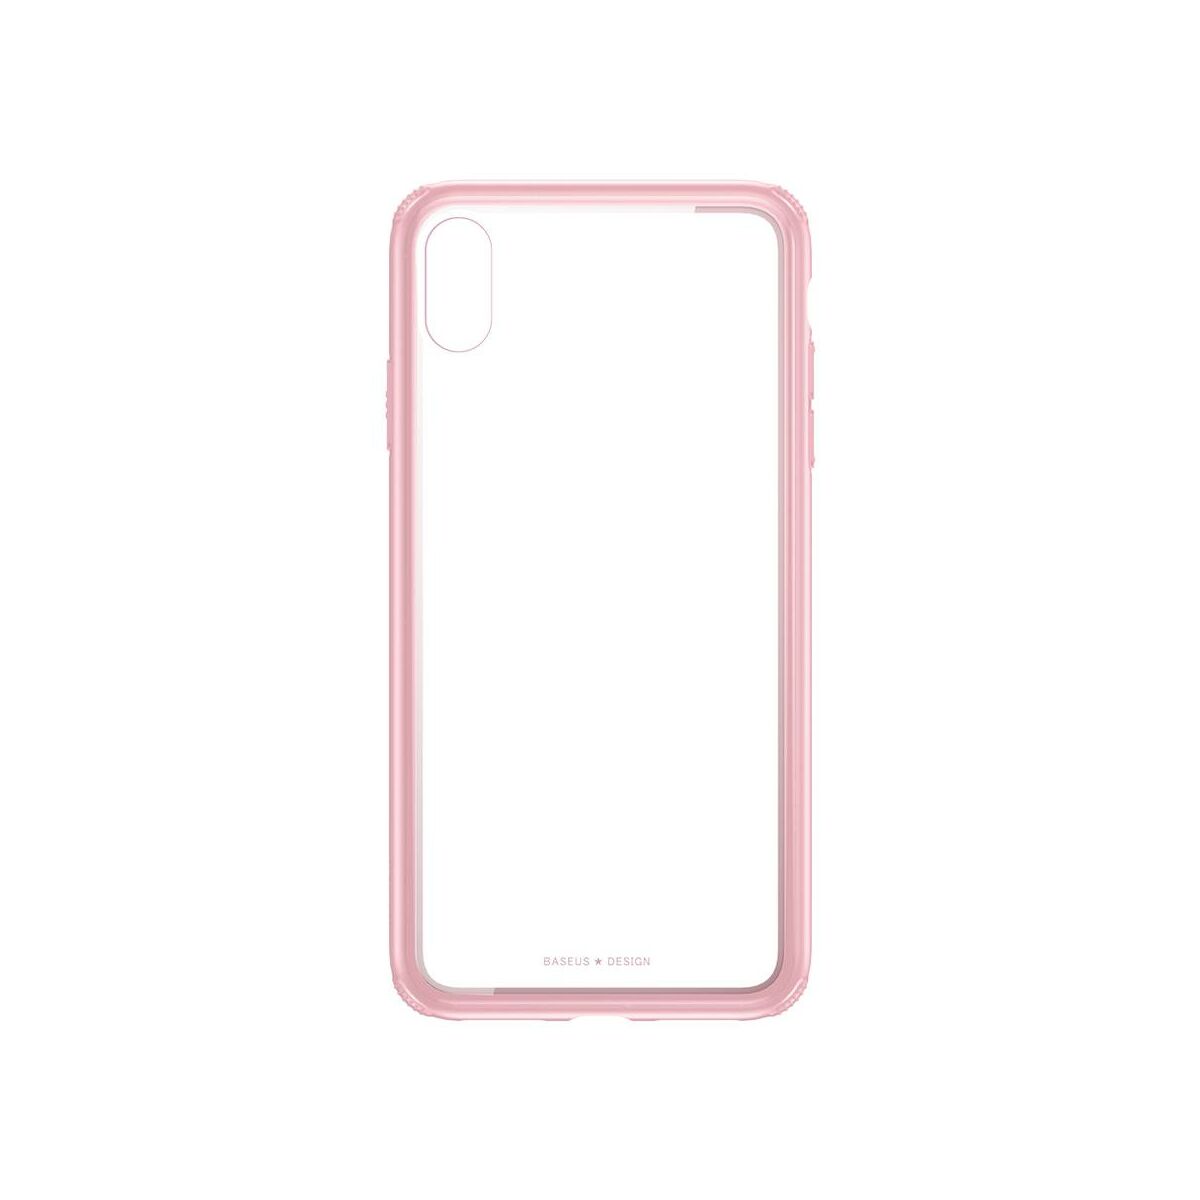 Kép 6/9 - Baseus iPhone XR tok, átlátszó, oldalkerettel, rózsaszín (WIAPIPH61-YS04)